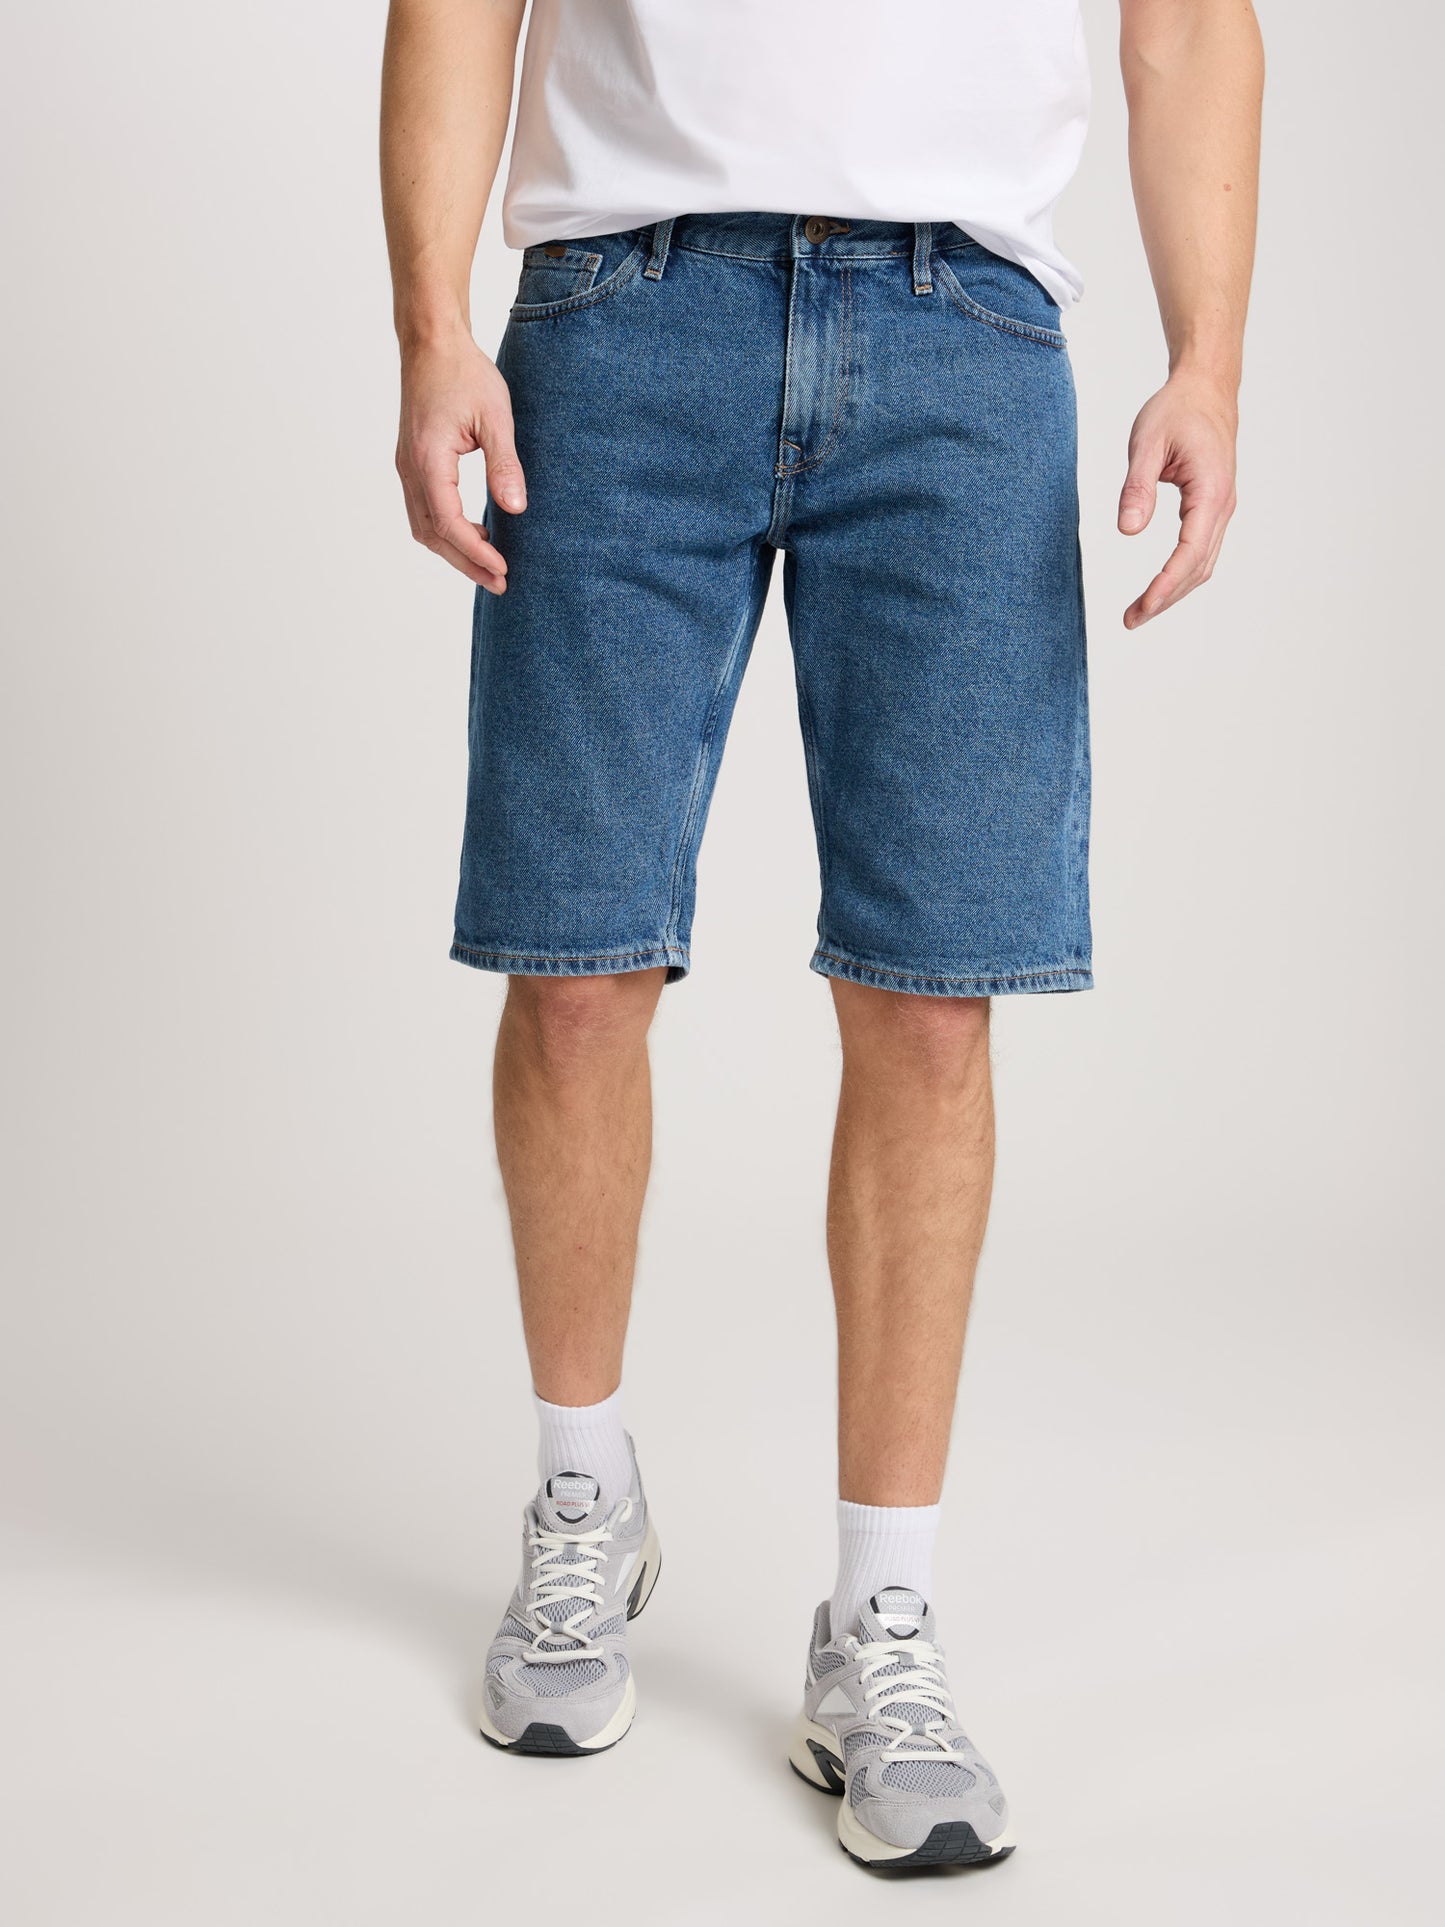 Leom men's jeans regular shorts medium blue